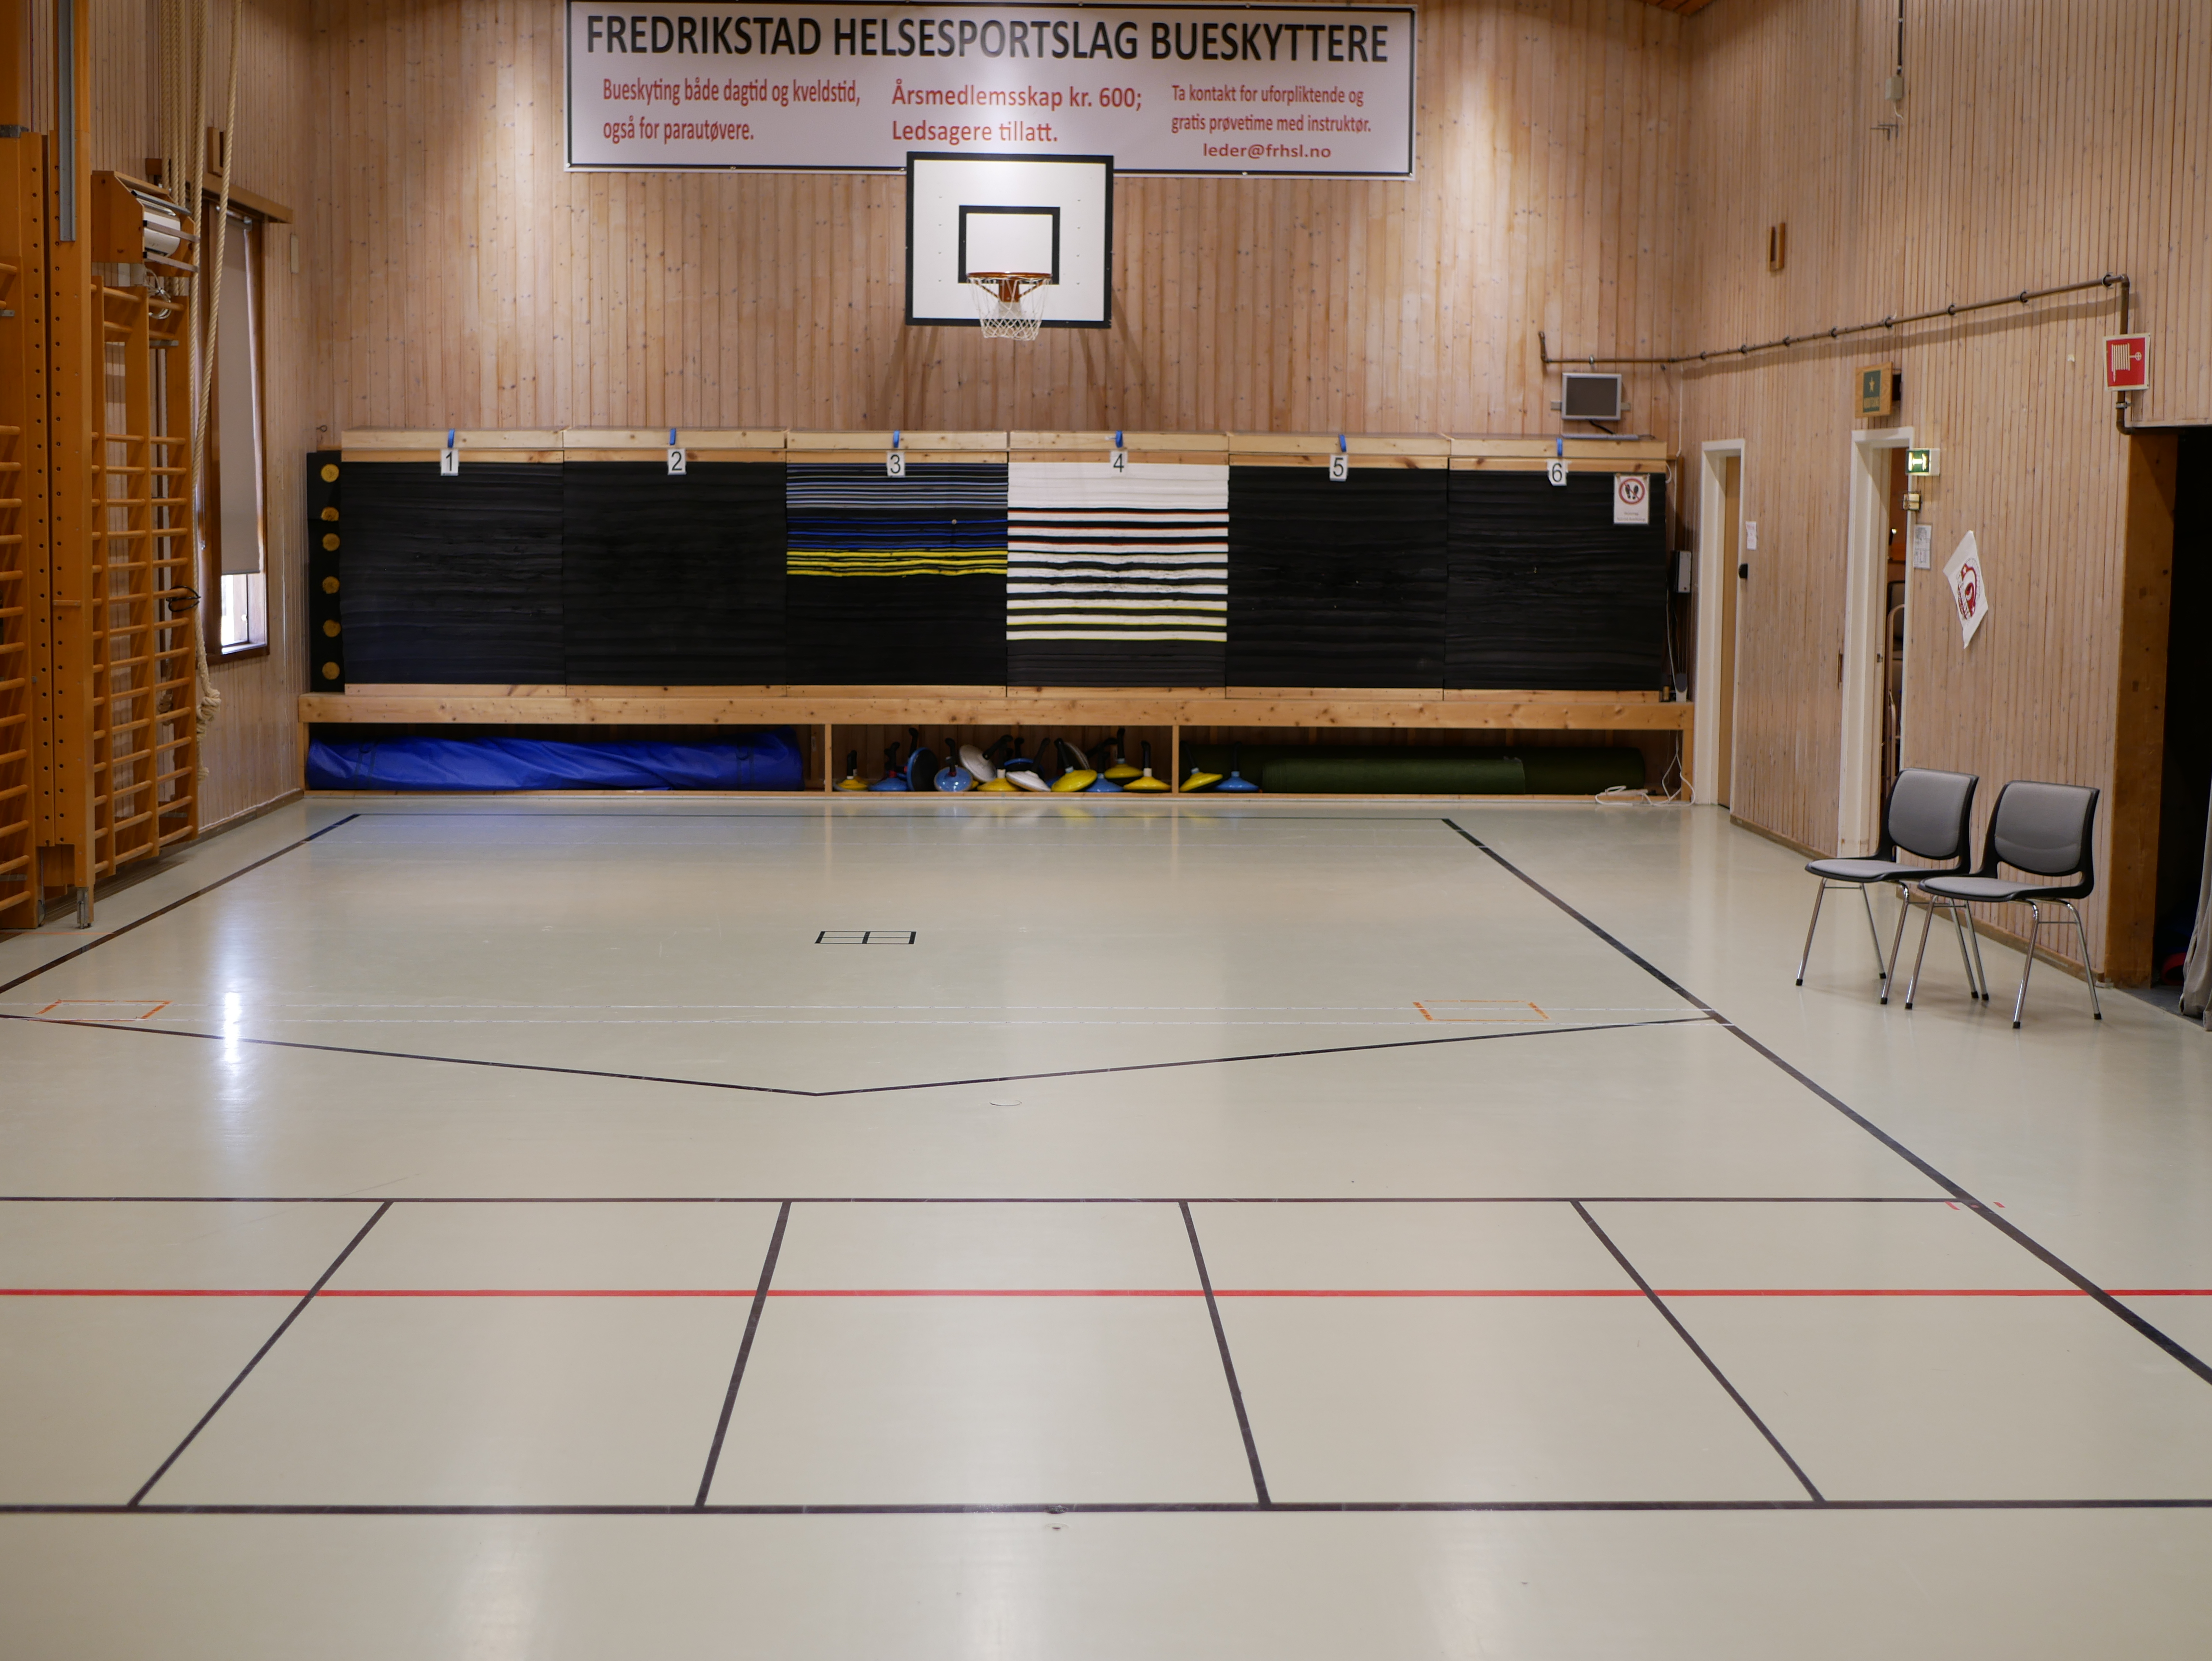 Gymsalen til Fredrikstad Helsesportlag har blitt pusset opp og gulvet har blitt merket opp til bruk av boccia og bueskyting. Foto: Olai S. Lillevold